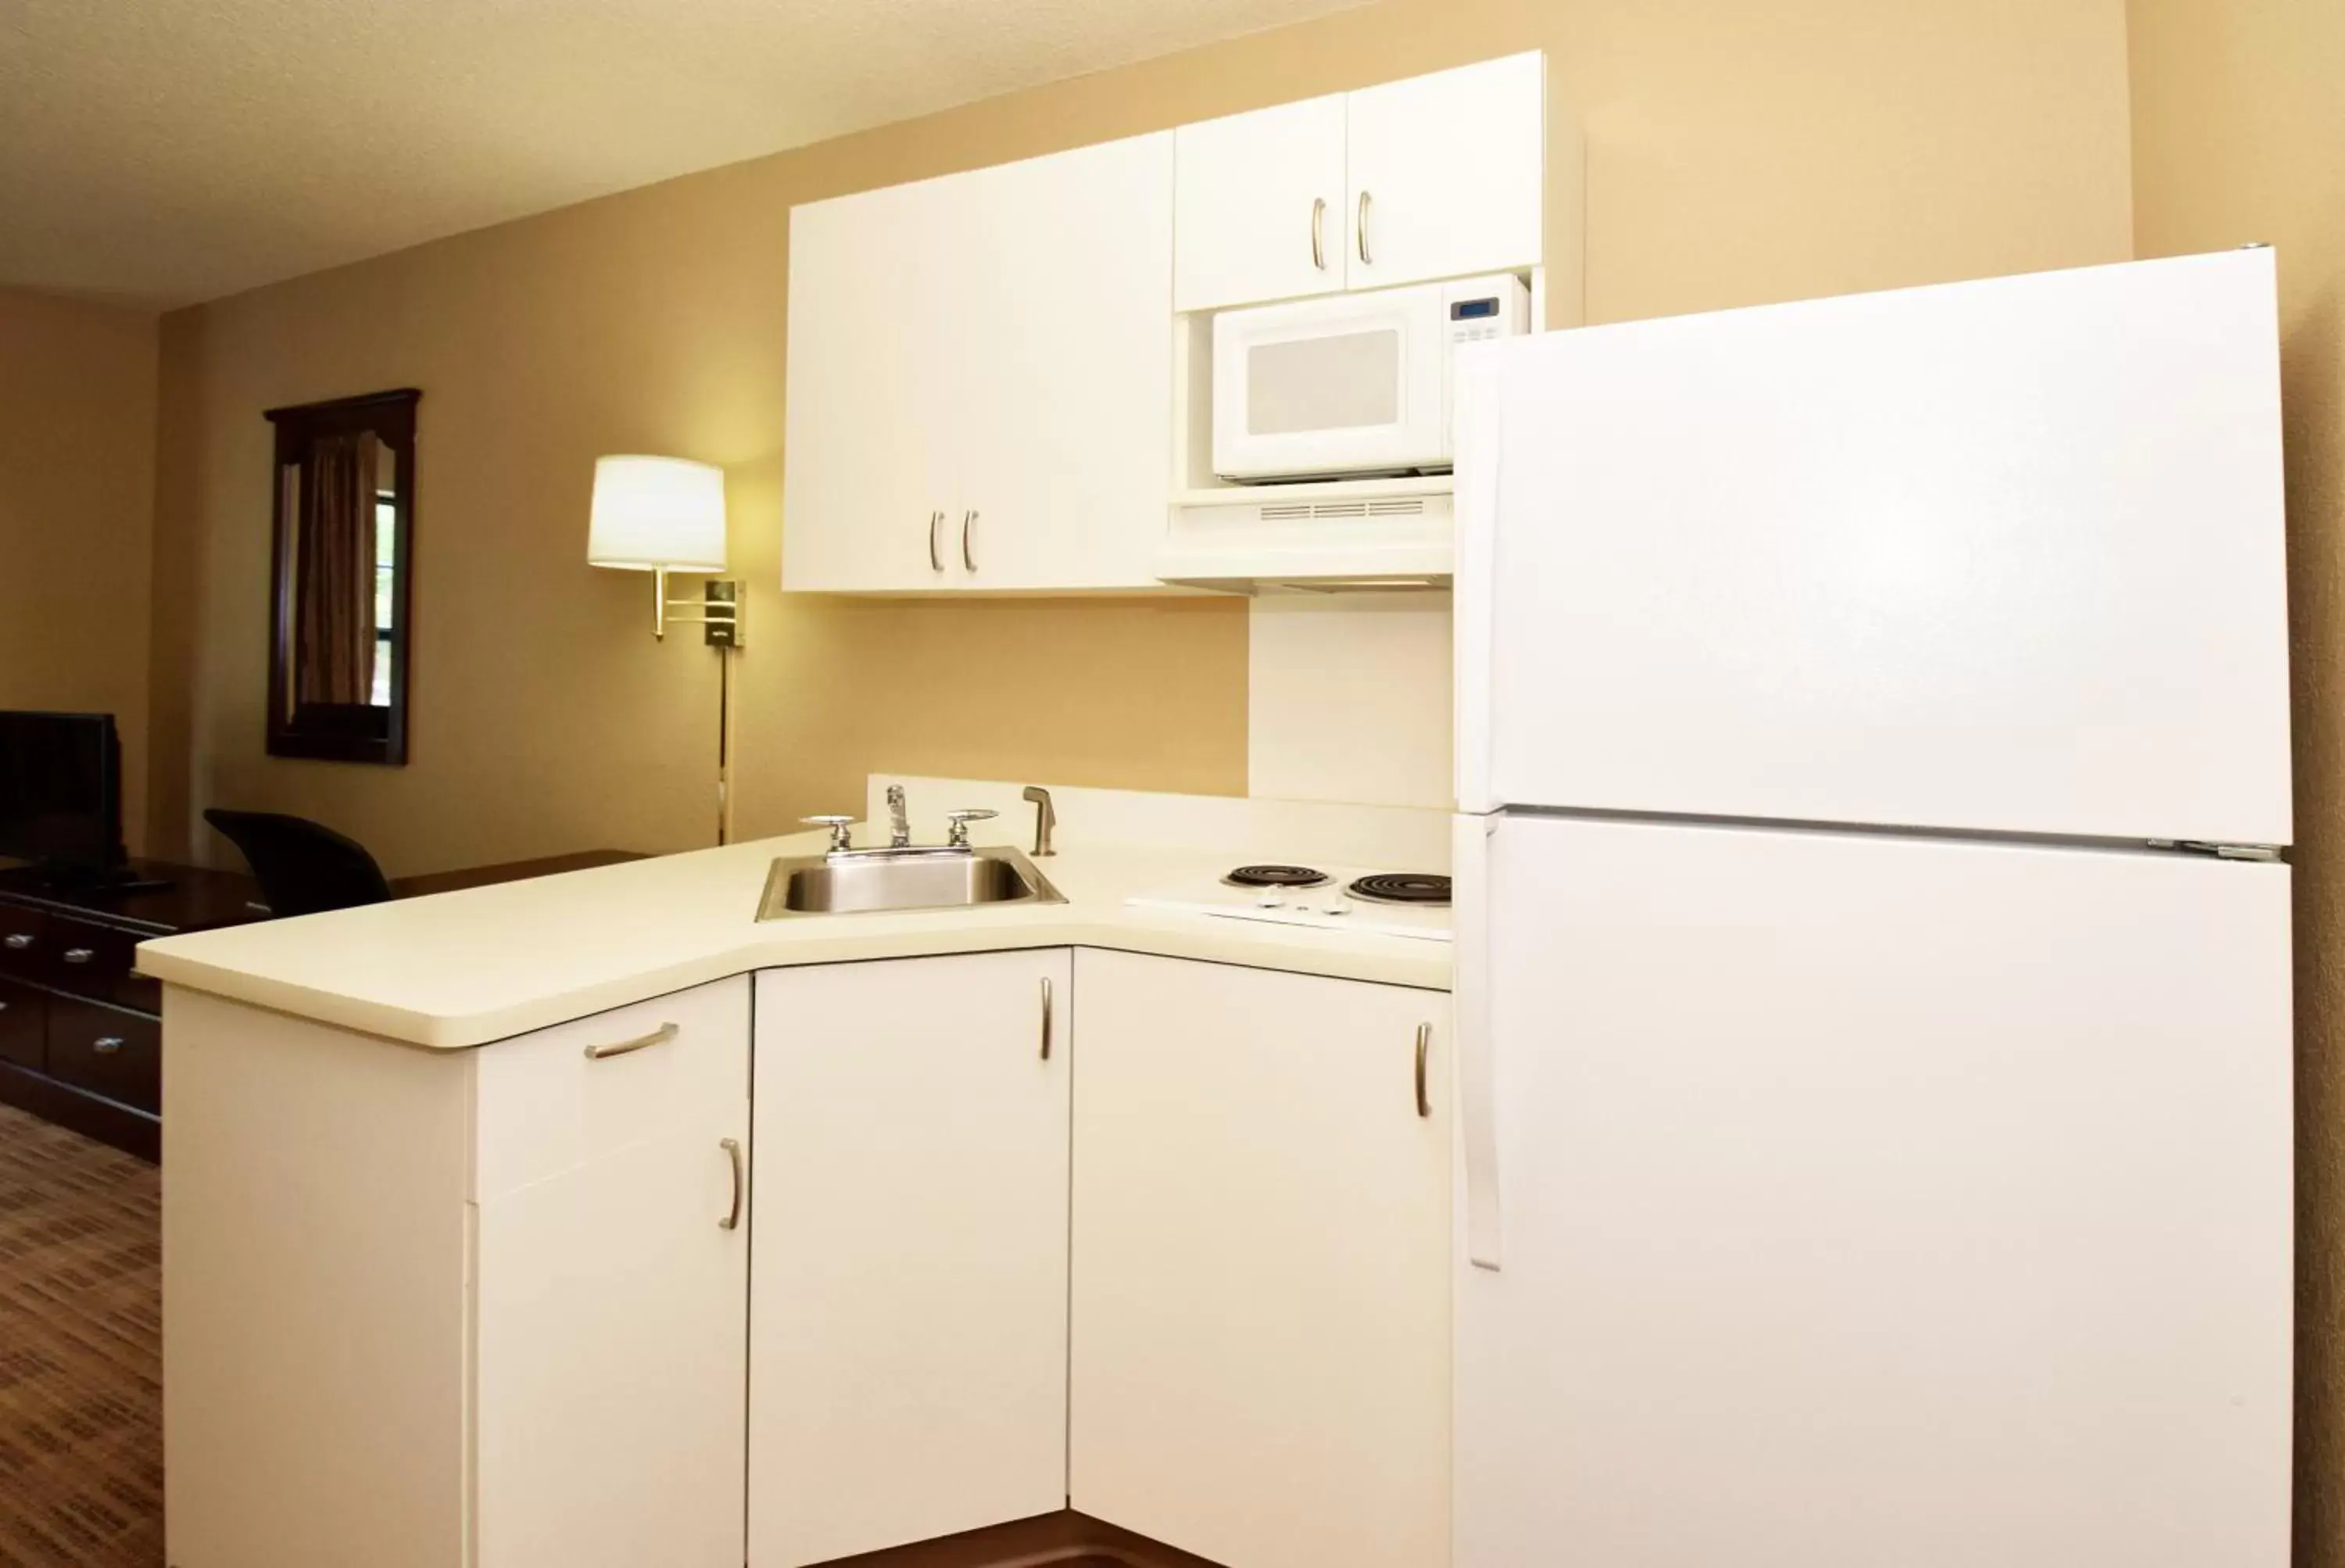 Kitchen or kitchenette, Kitchen/Kitchenette in Extended Stay America Suites - Albuquerque - Rio Rancho